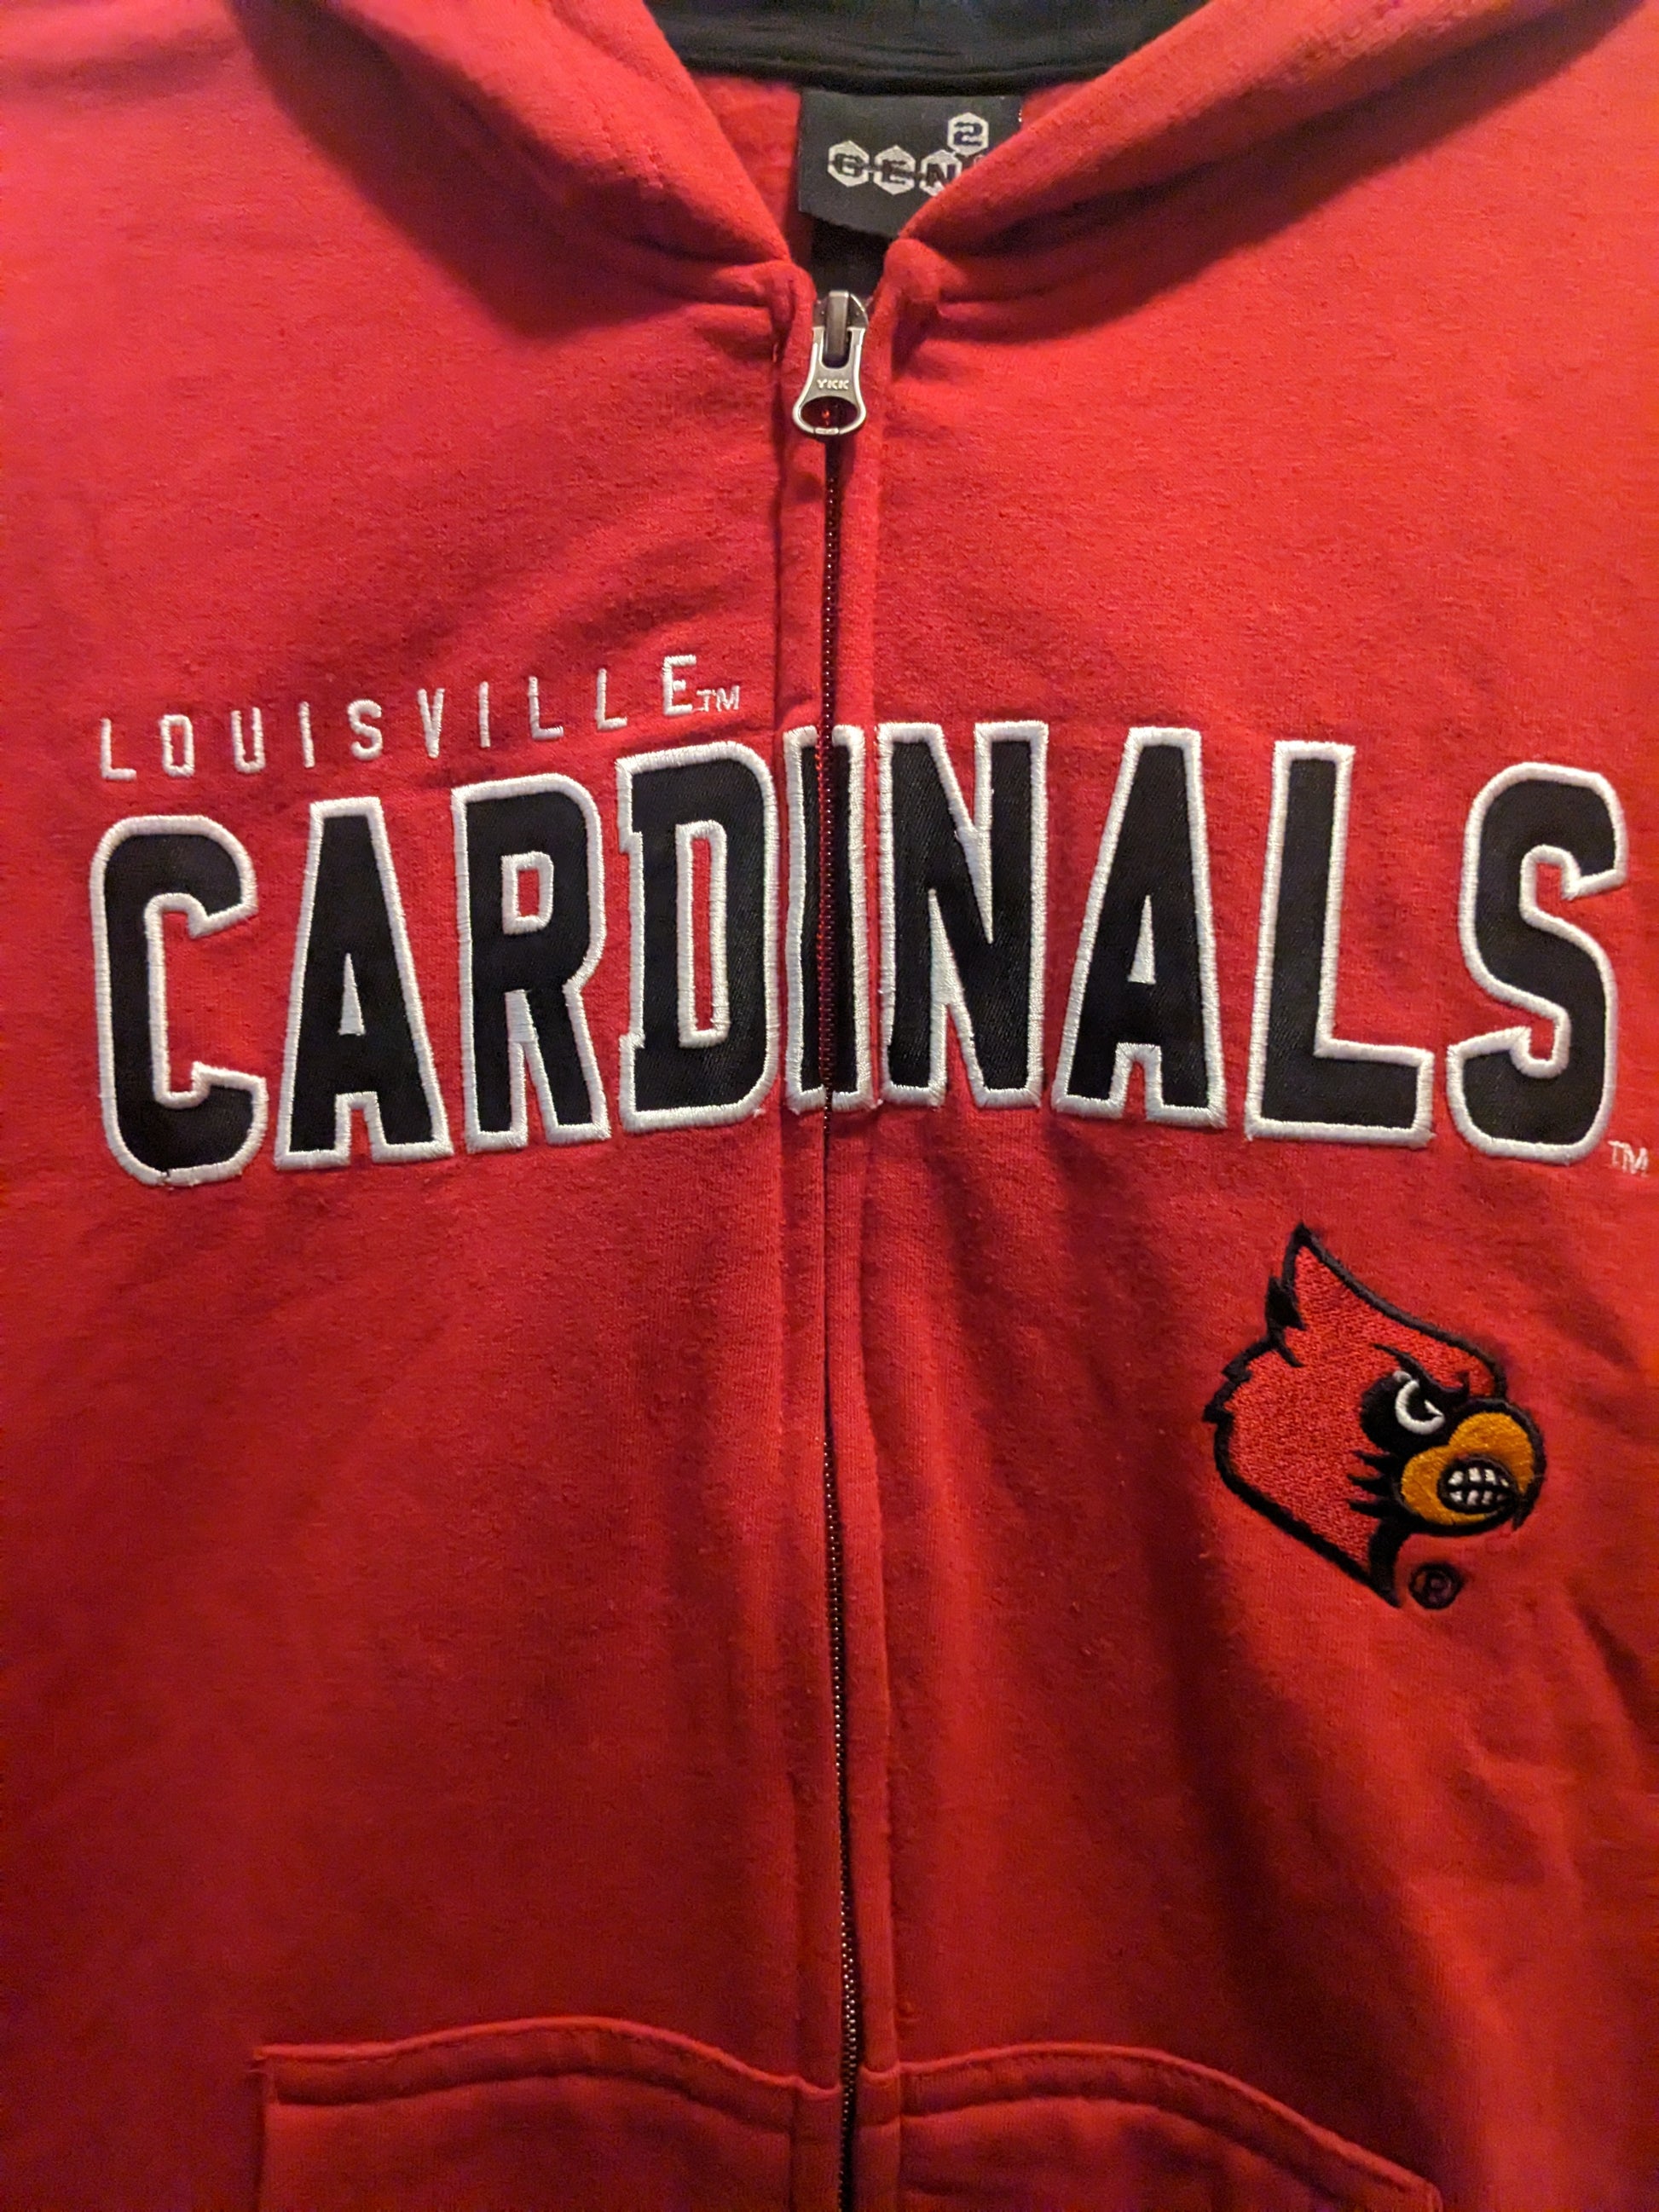 Louisville Cardinals Sweatshirts, Louisville Hoodies, Fleece